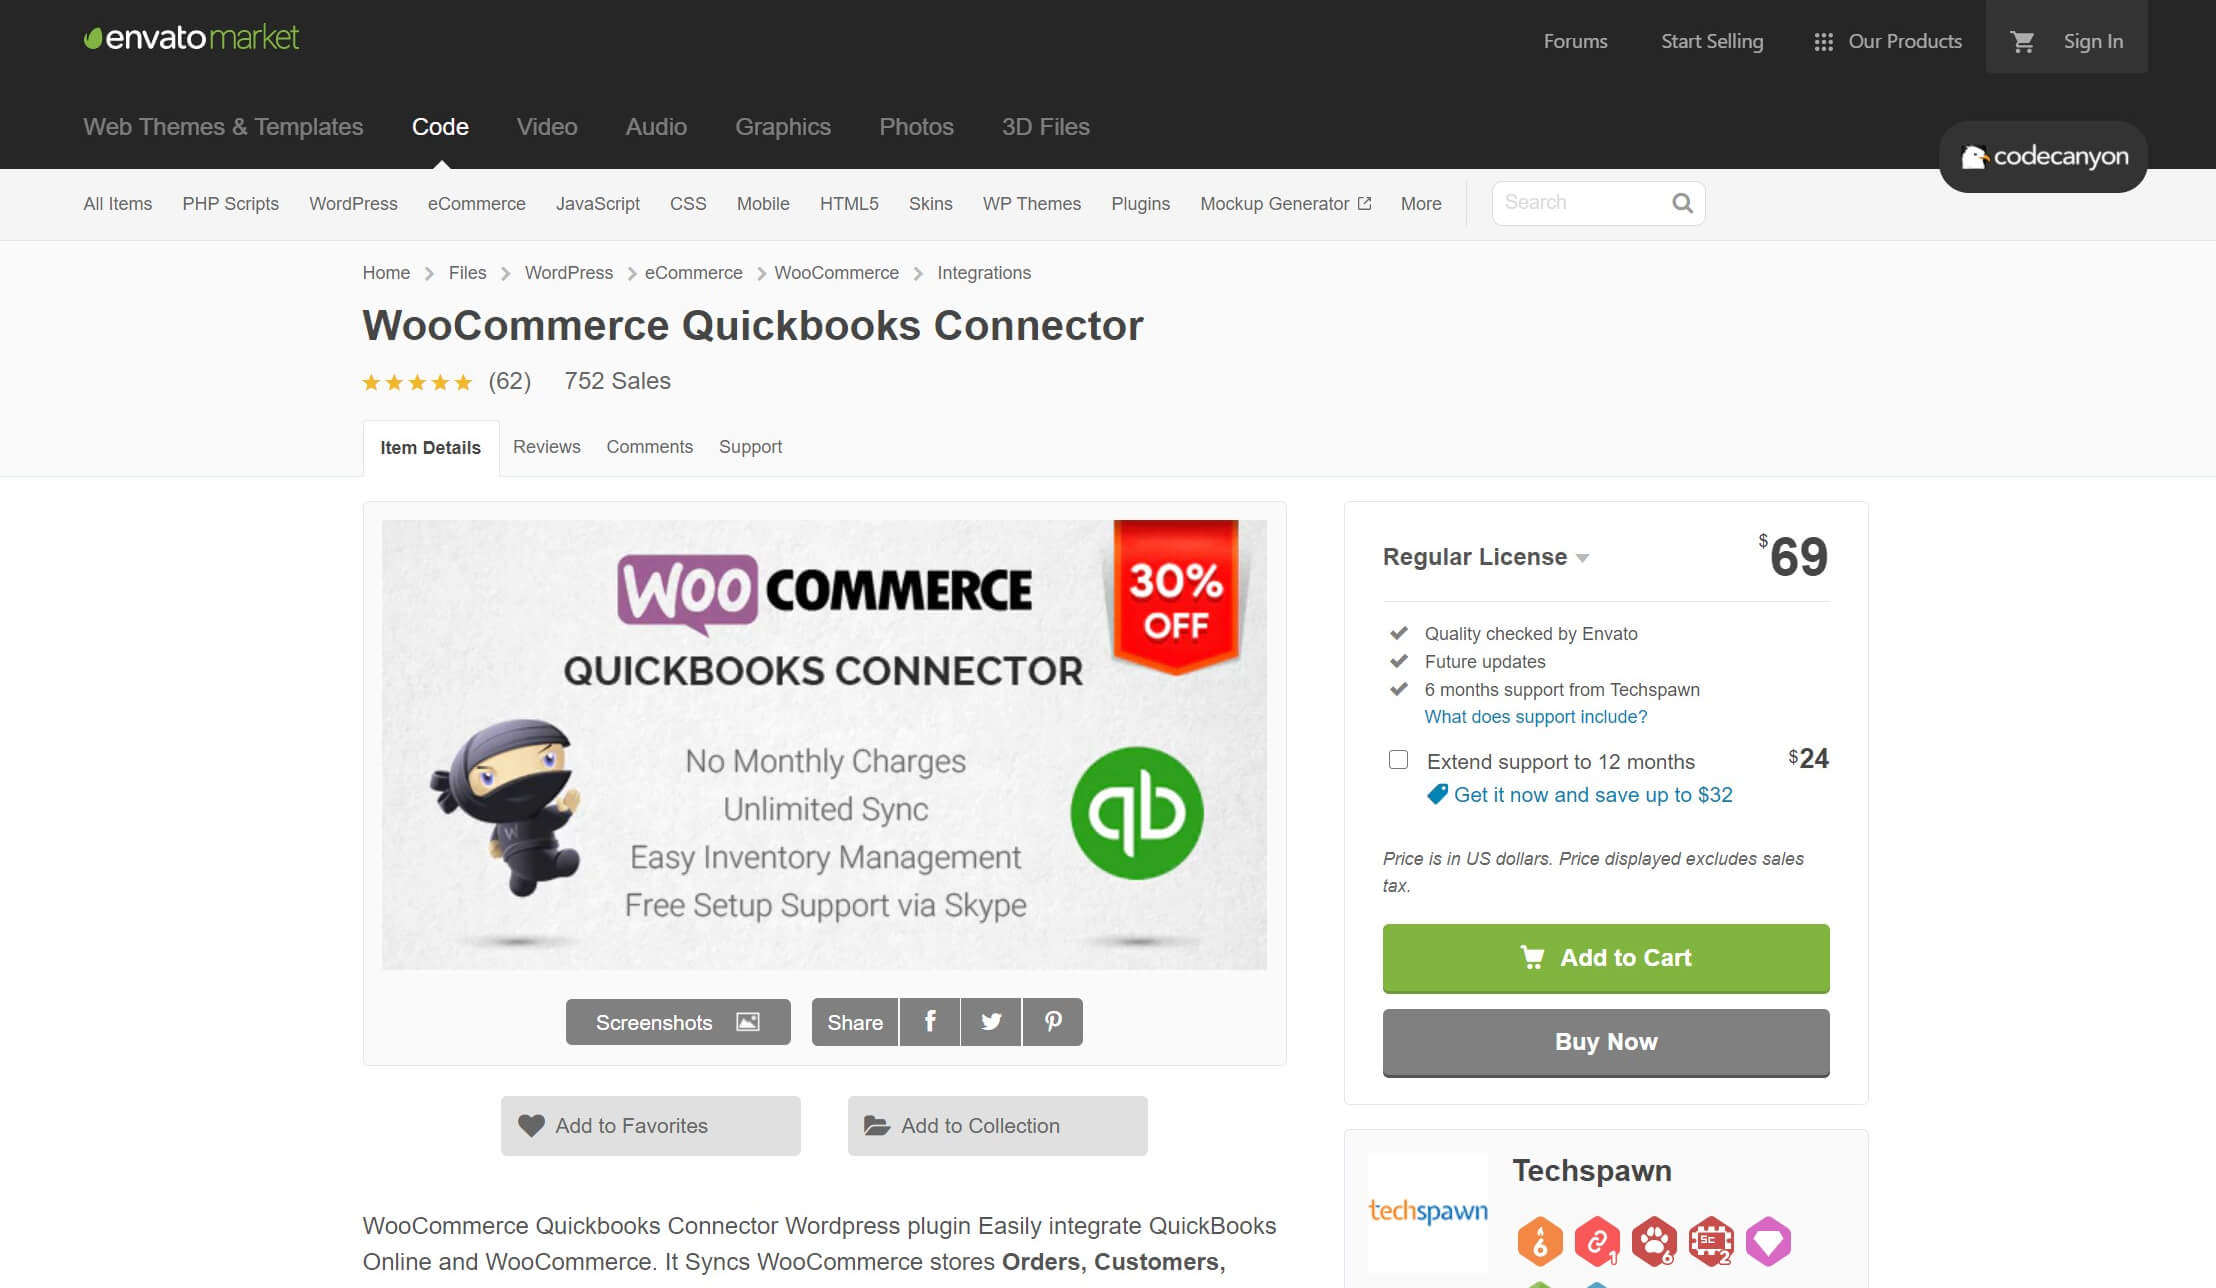 The WooCommerce QuickBooks Connector plugin.